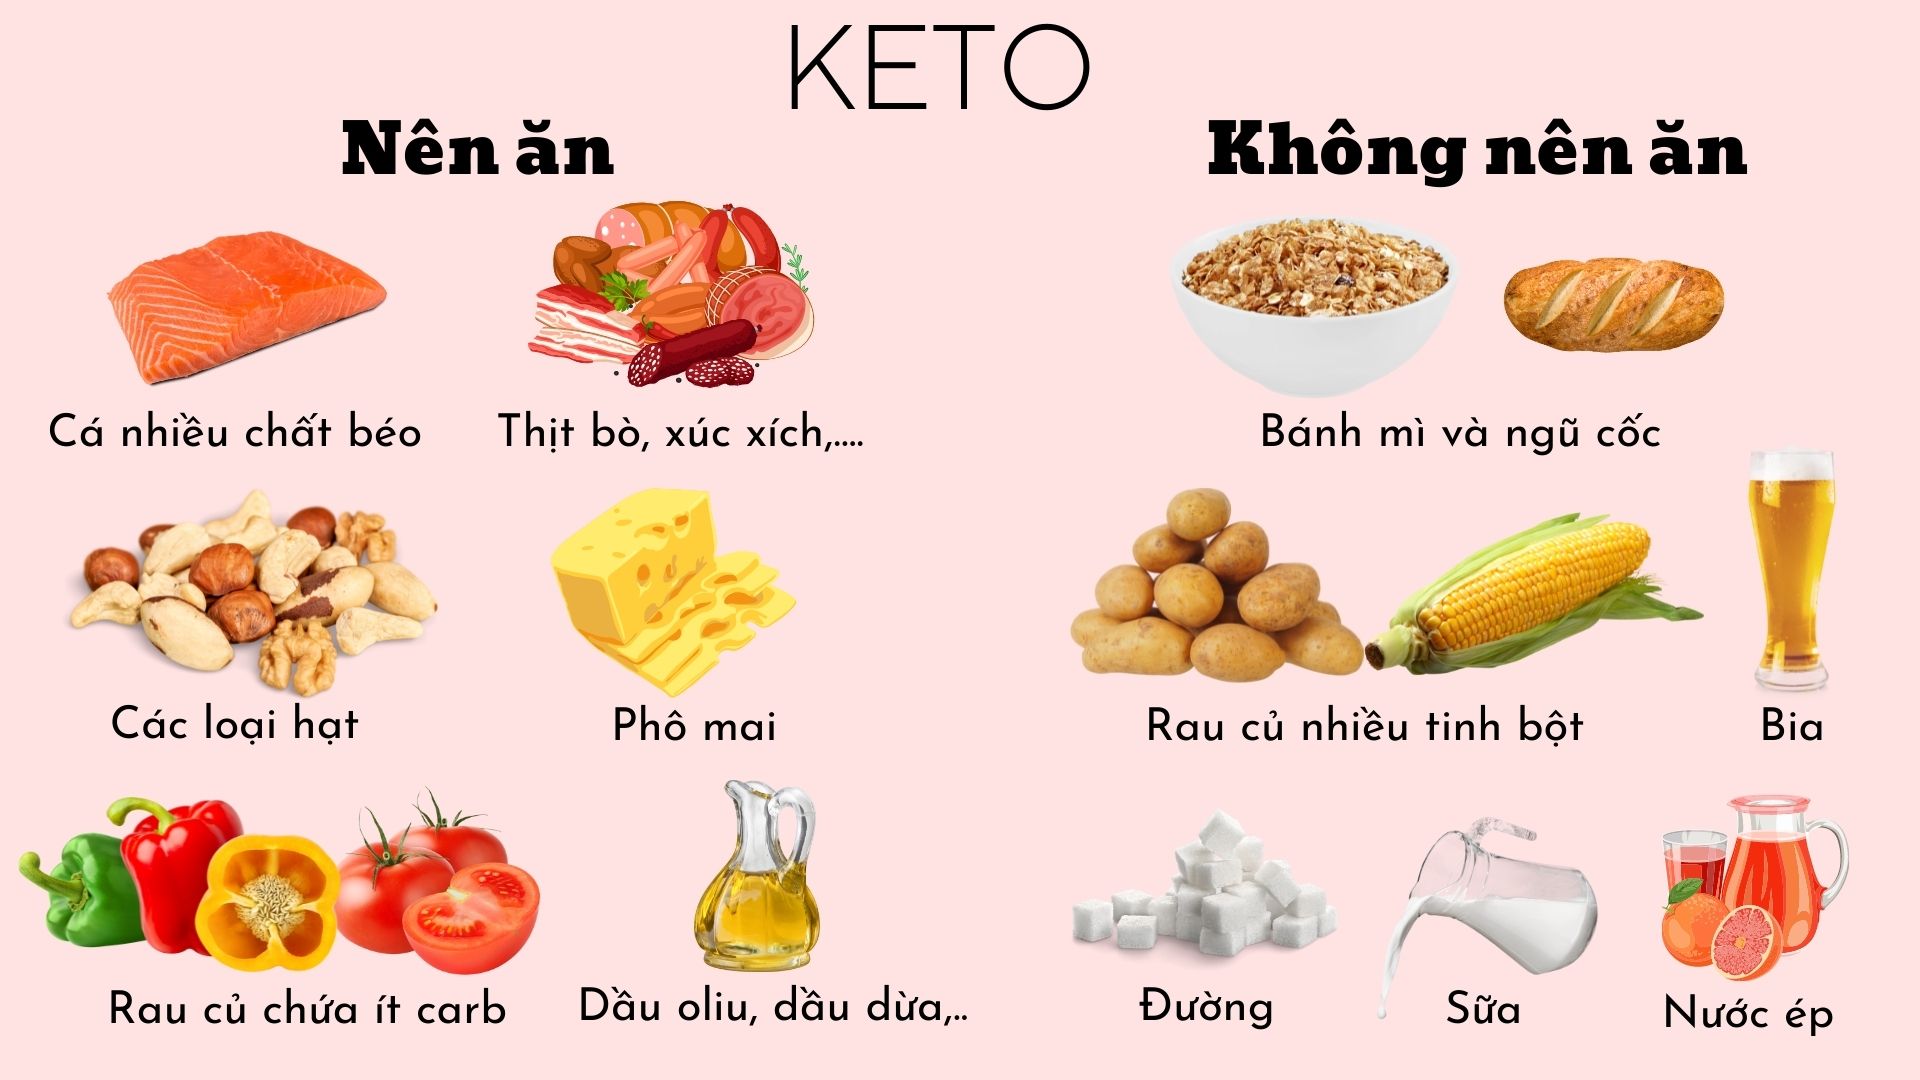 Giảm cân nhanh chóng với chế độ ăn Keto - FOB